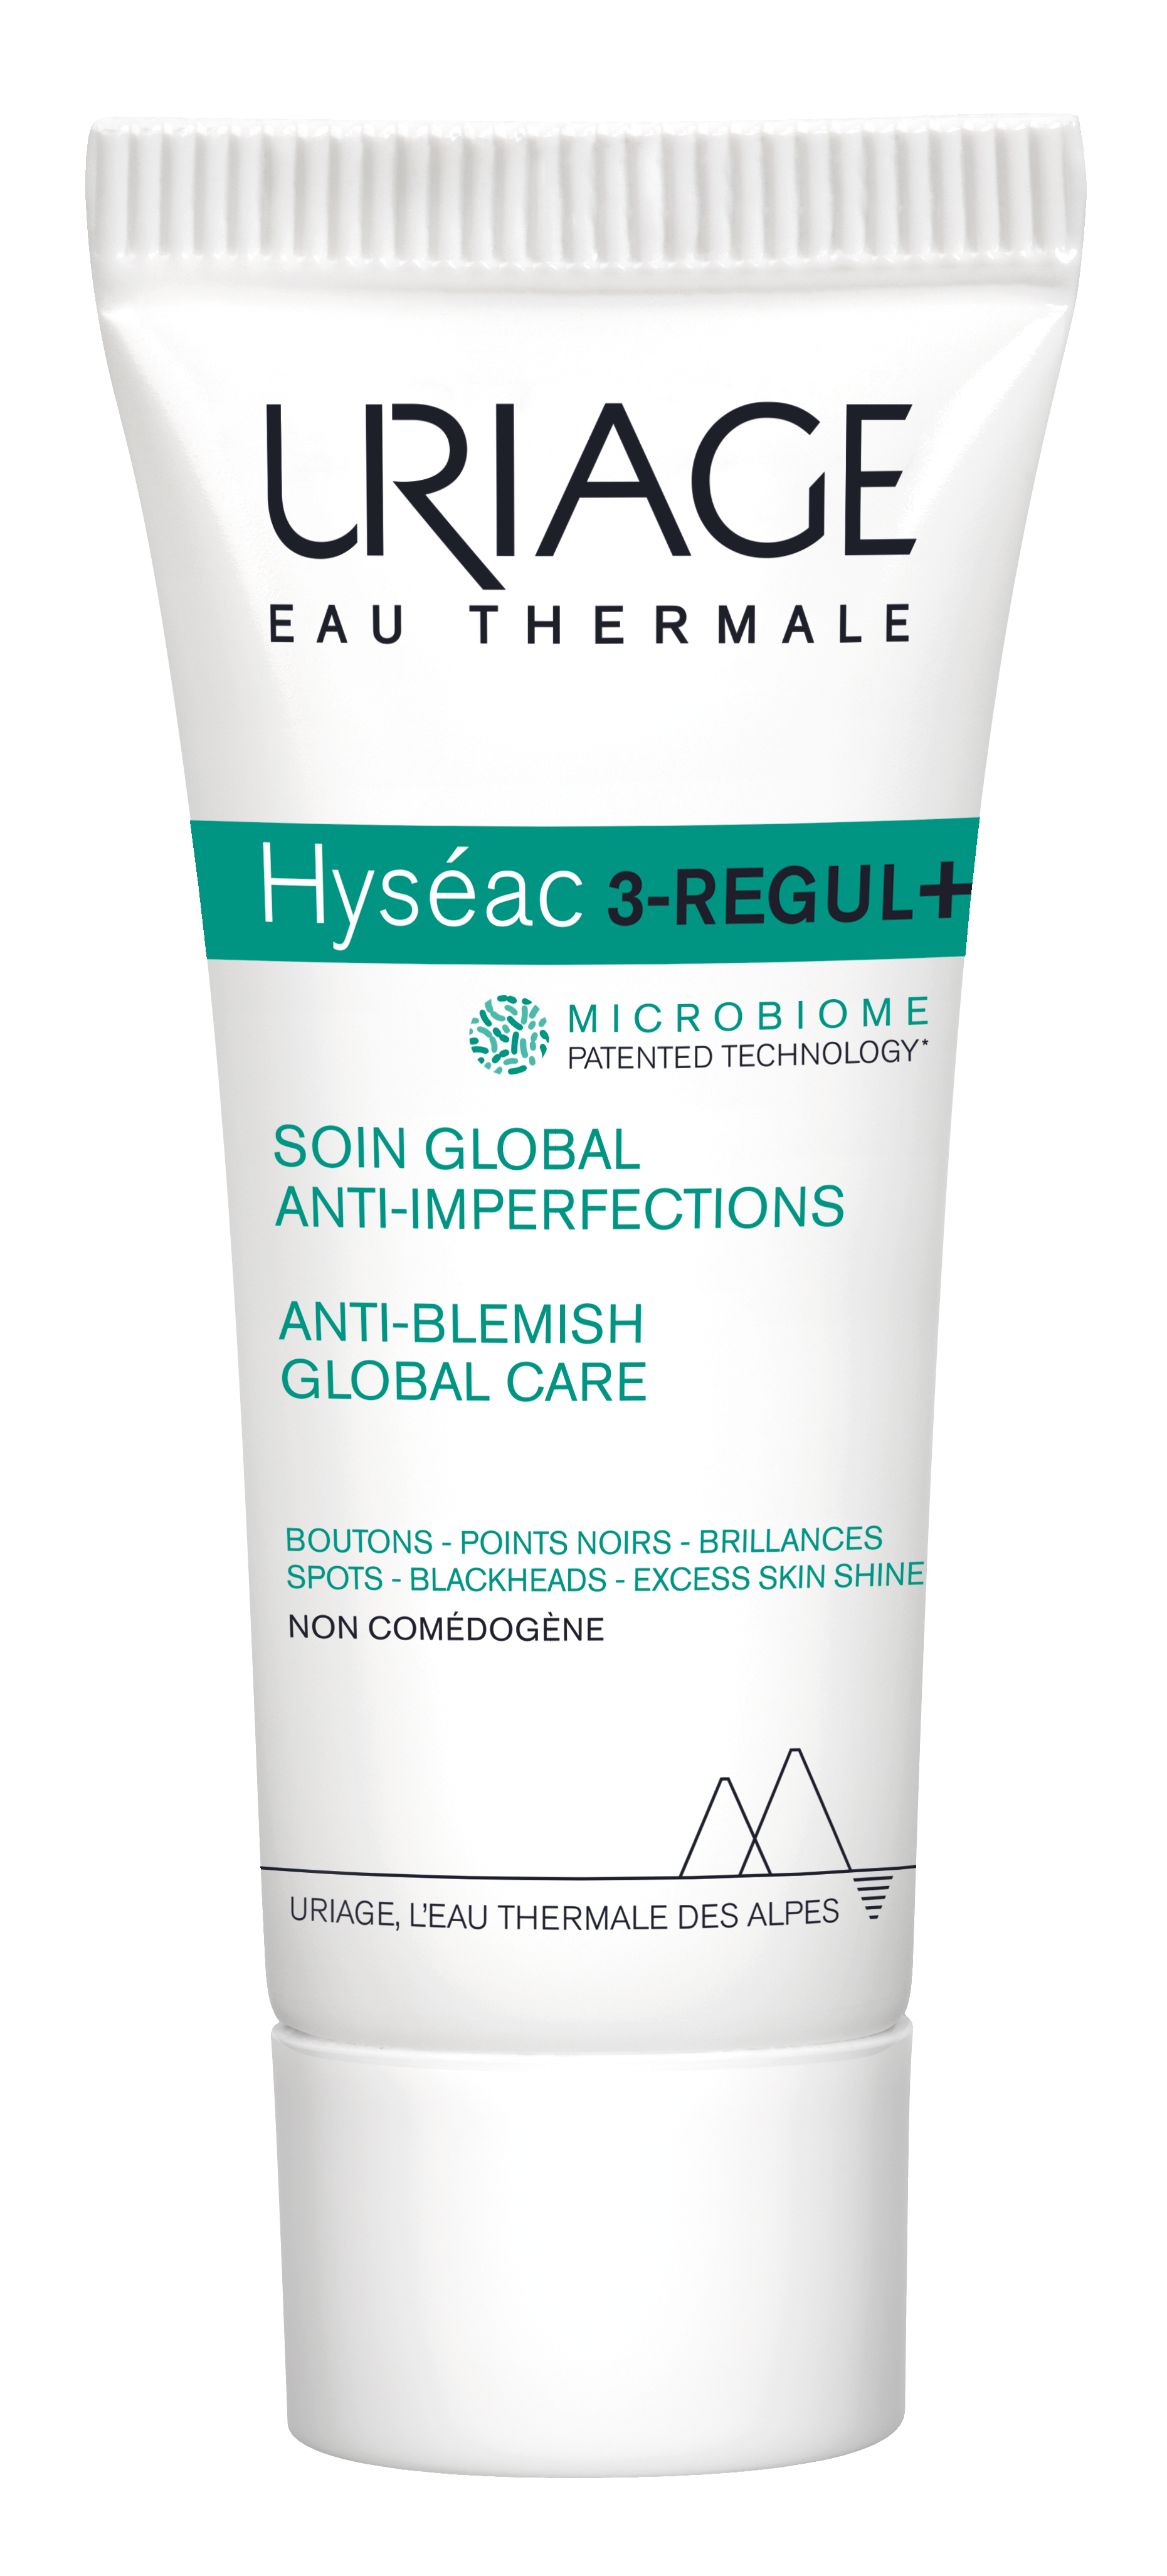 Hyseac 3Regul+, tehnologia revoluționară URIAGE împotriva acneei într-o formulă mai rapidă și mai eficientă